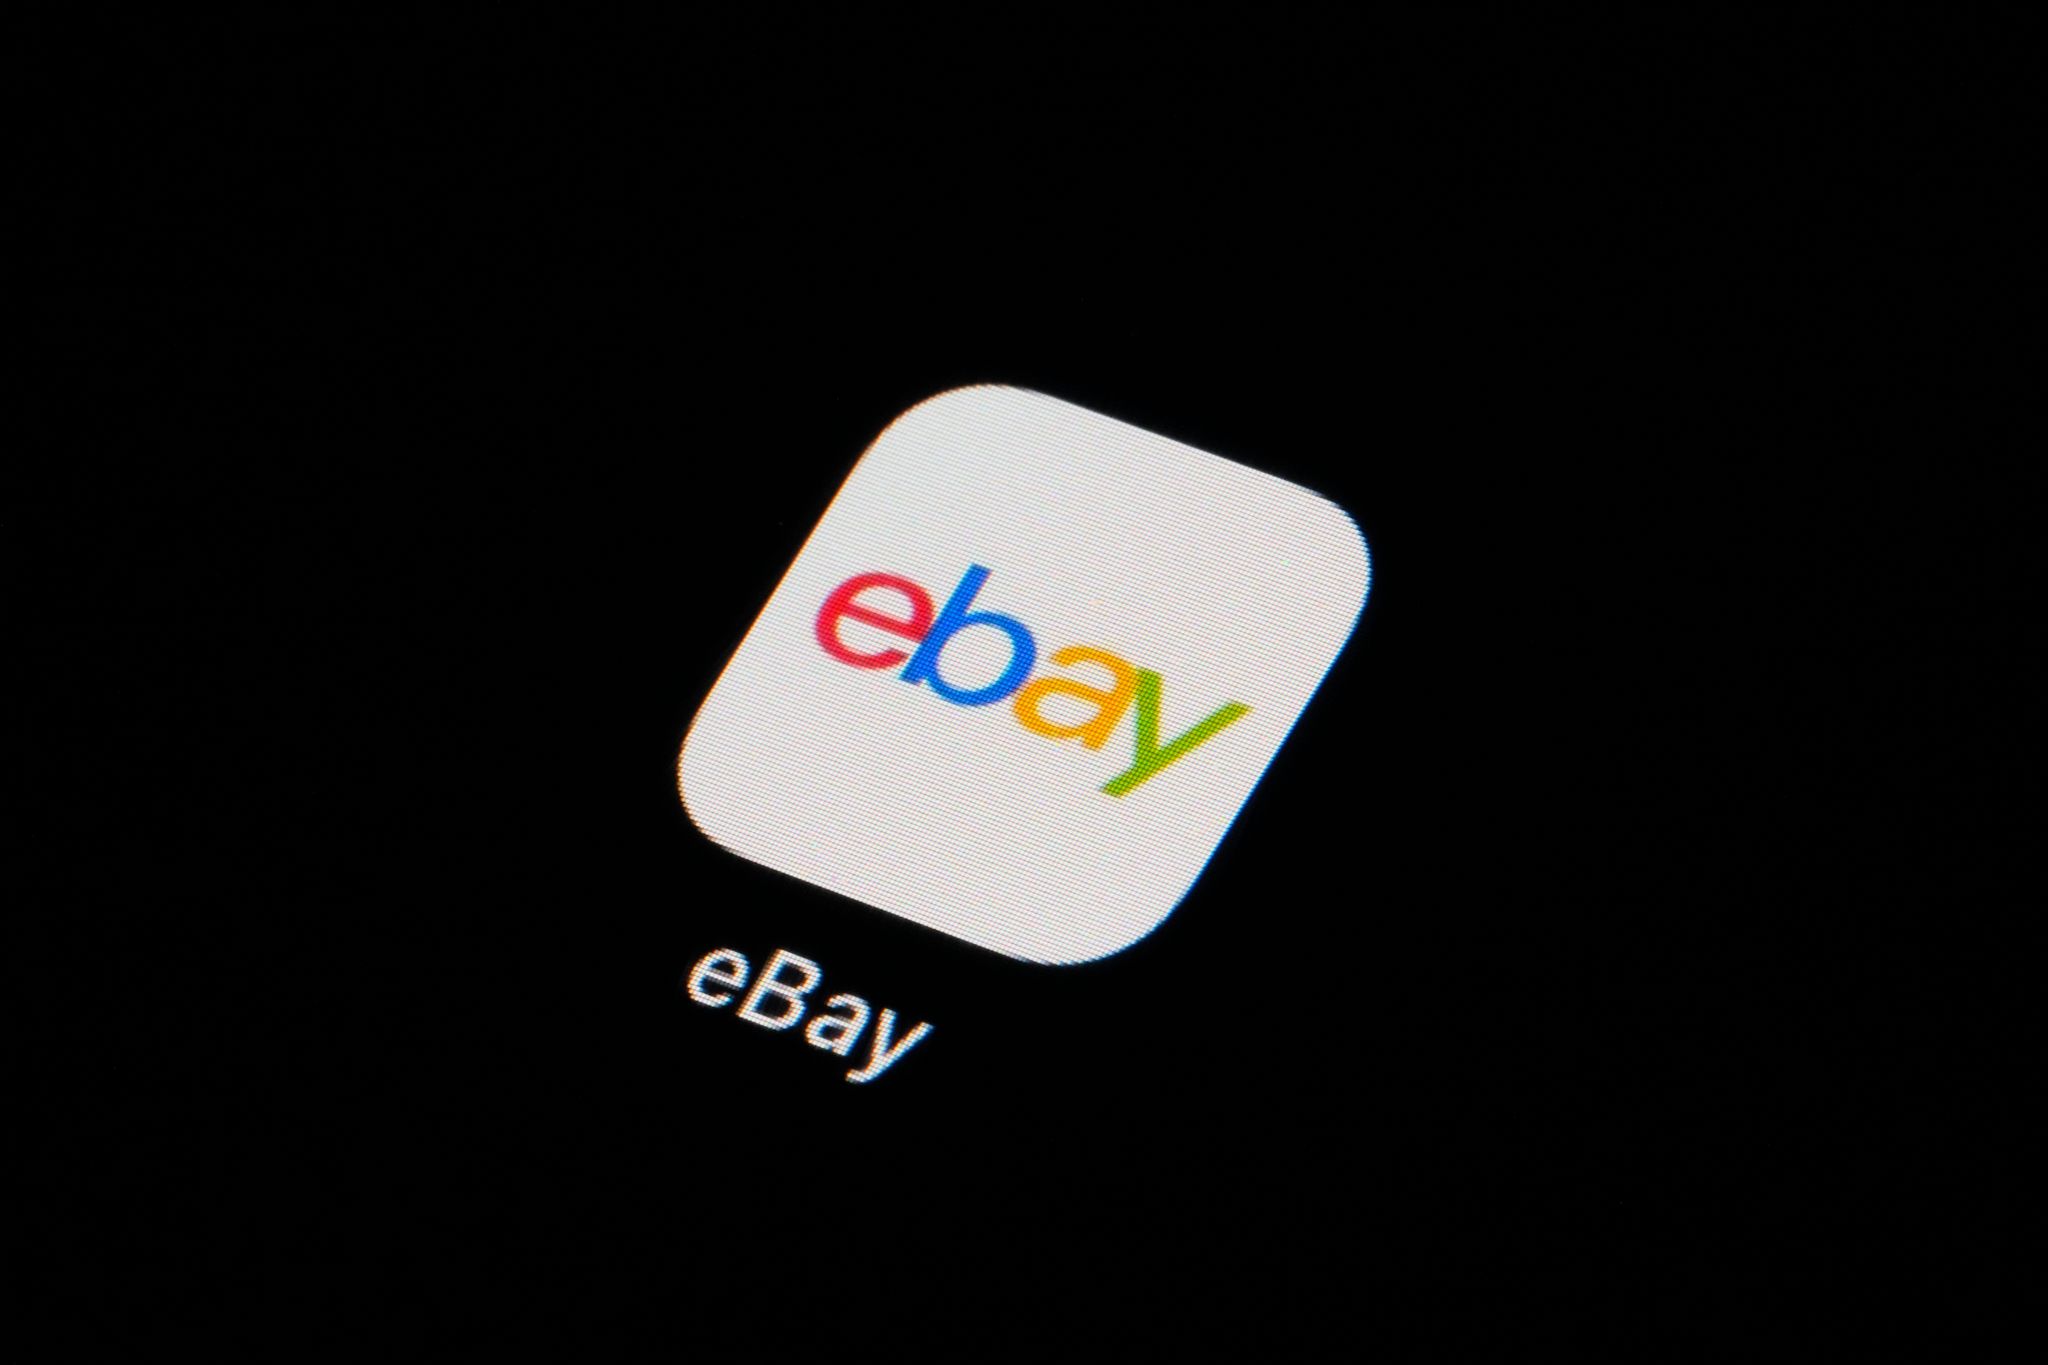 Weil Mitarbeiter von Ebay Verfasser eines Online-Newsletters tyrannisiert hatten, zahlt die Online-Plattform eine Millionenstrafe und kommt für drei Jahre unter Aufsicht.